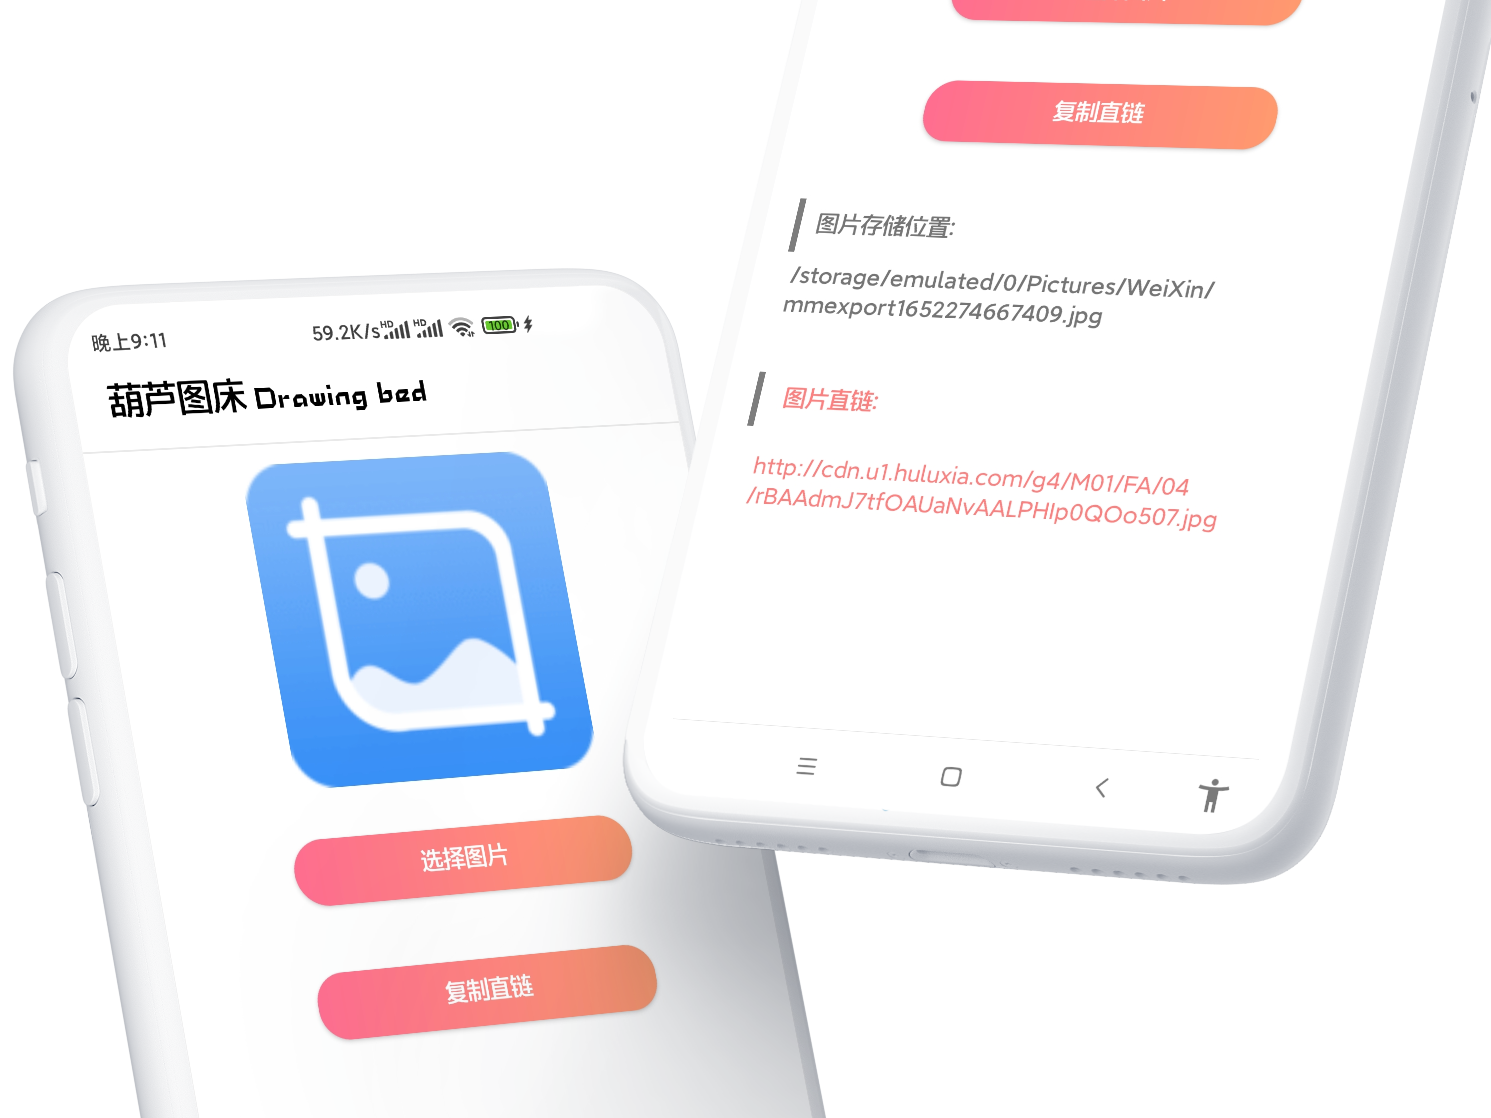 Android葫芦图床V1.1.2纯净版-GOdou社区